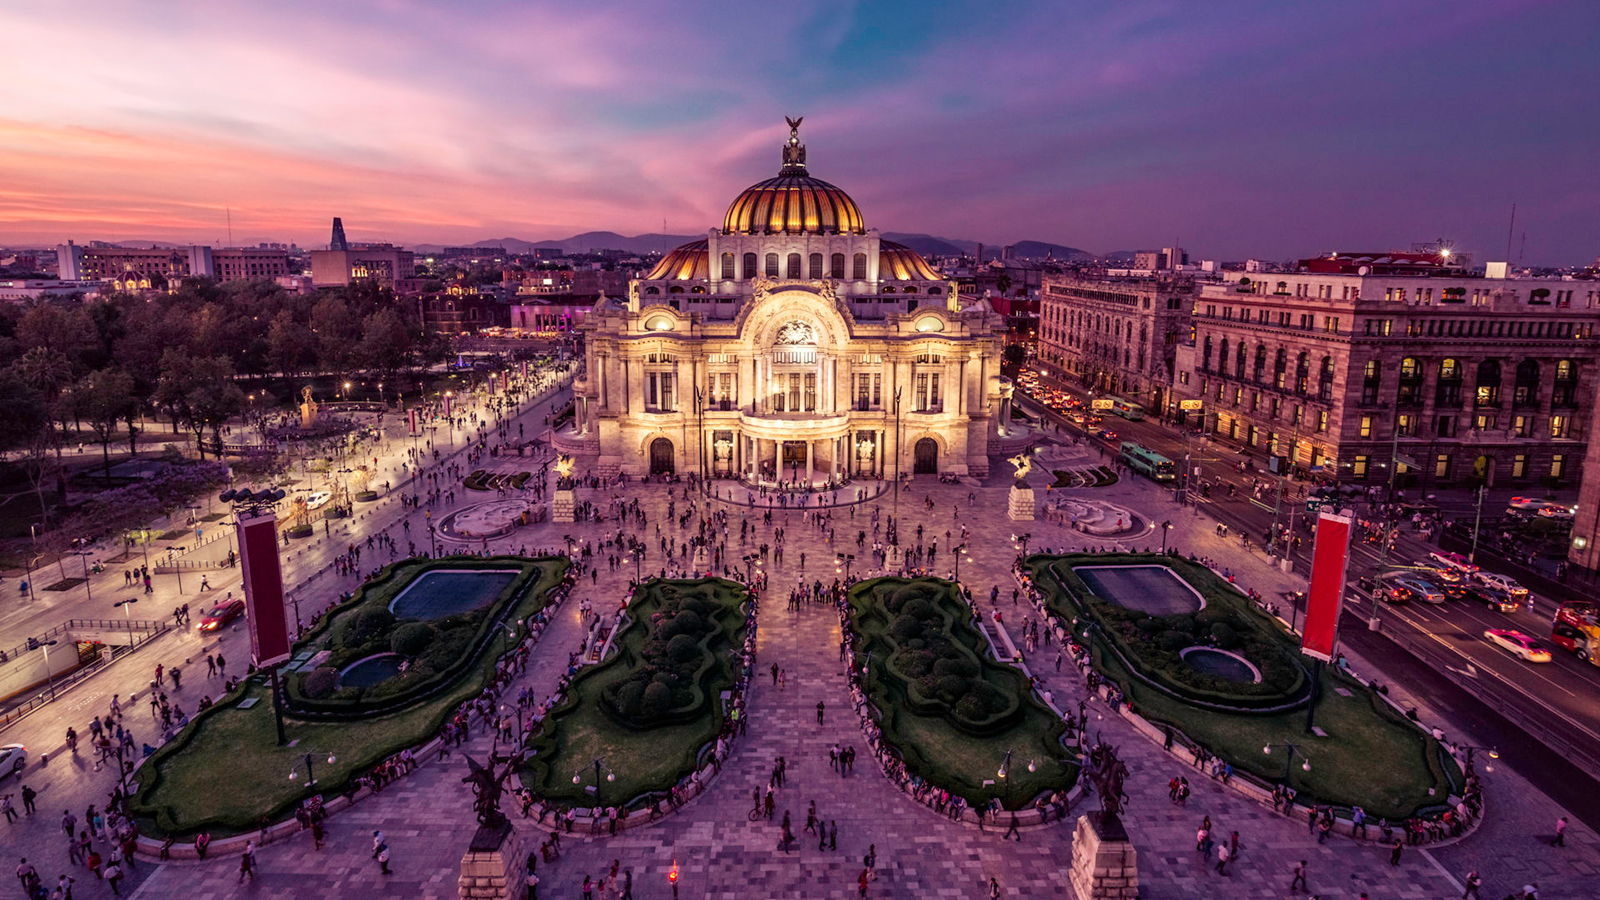 Palacio de Bellas Artes lit up at night in Mexico City, Mexico